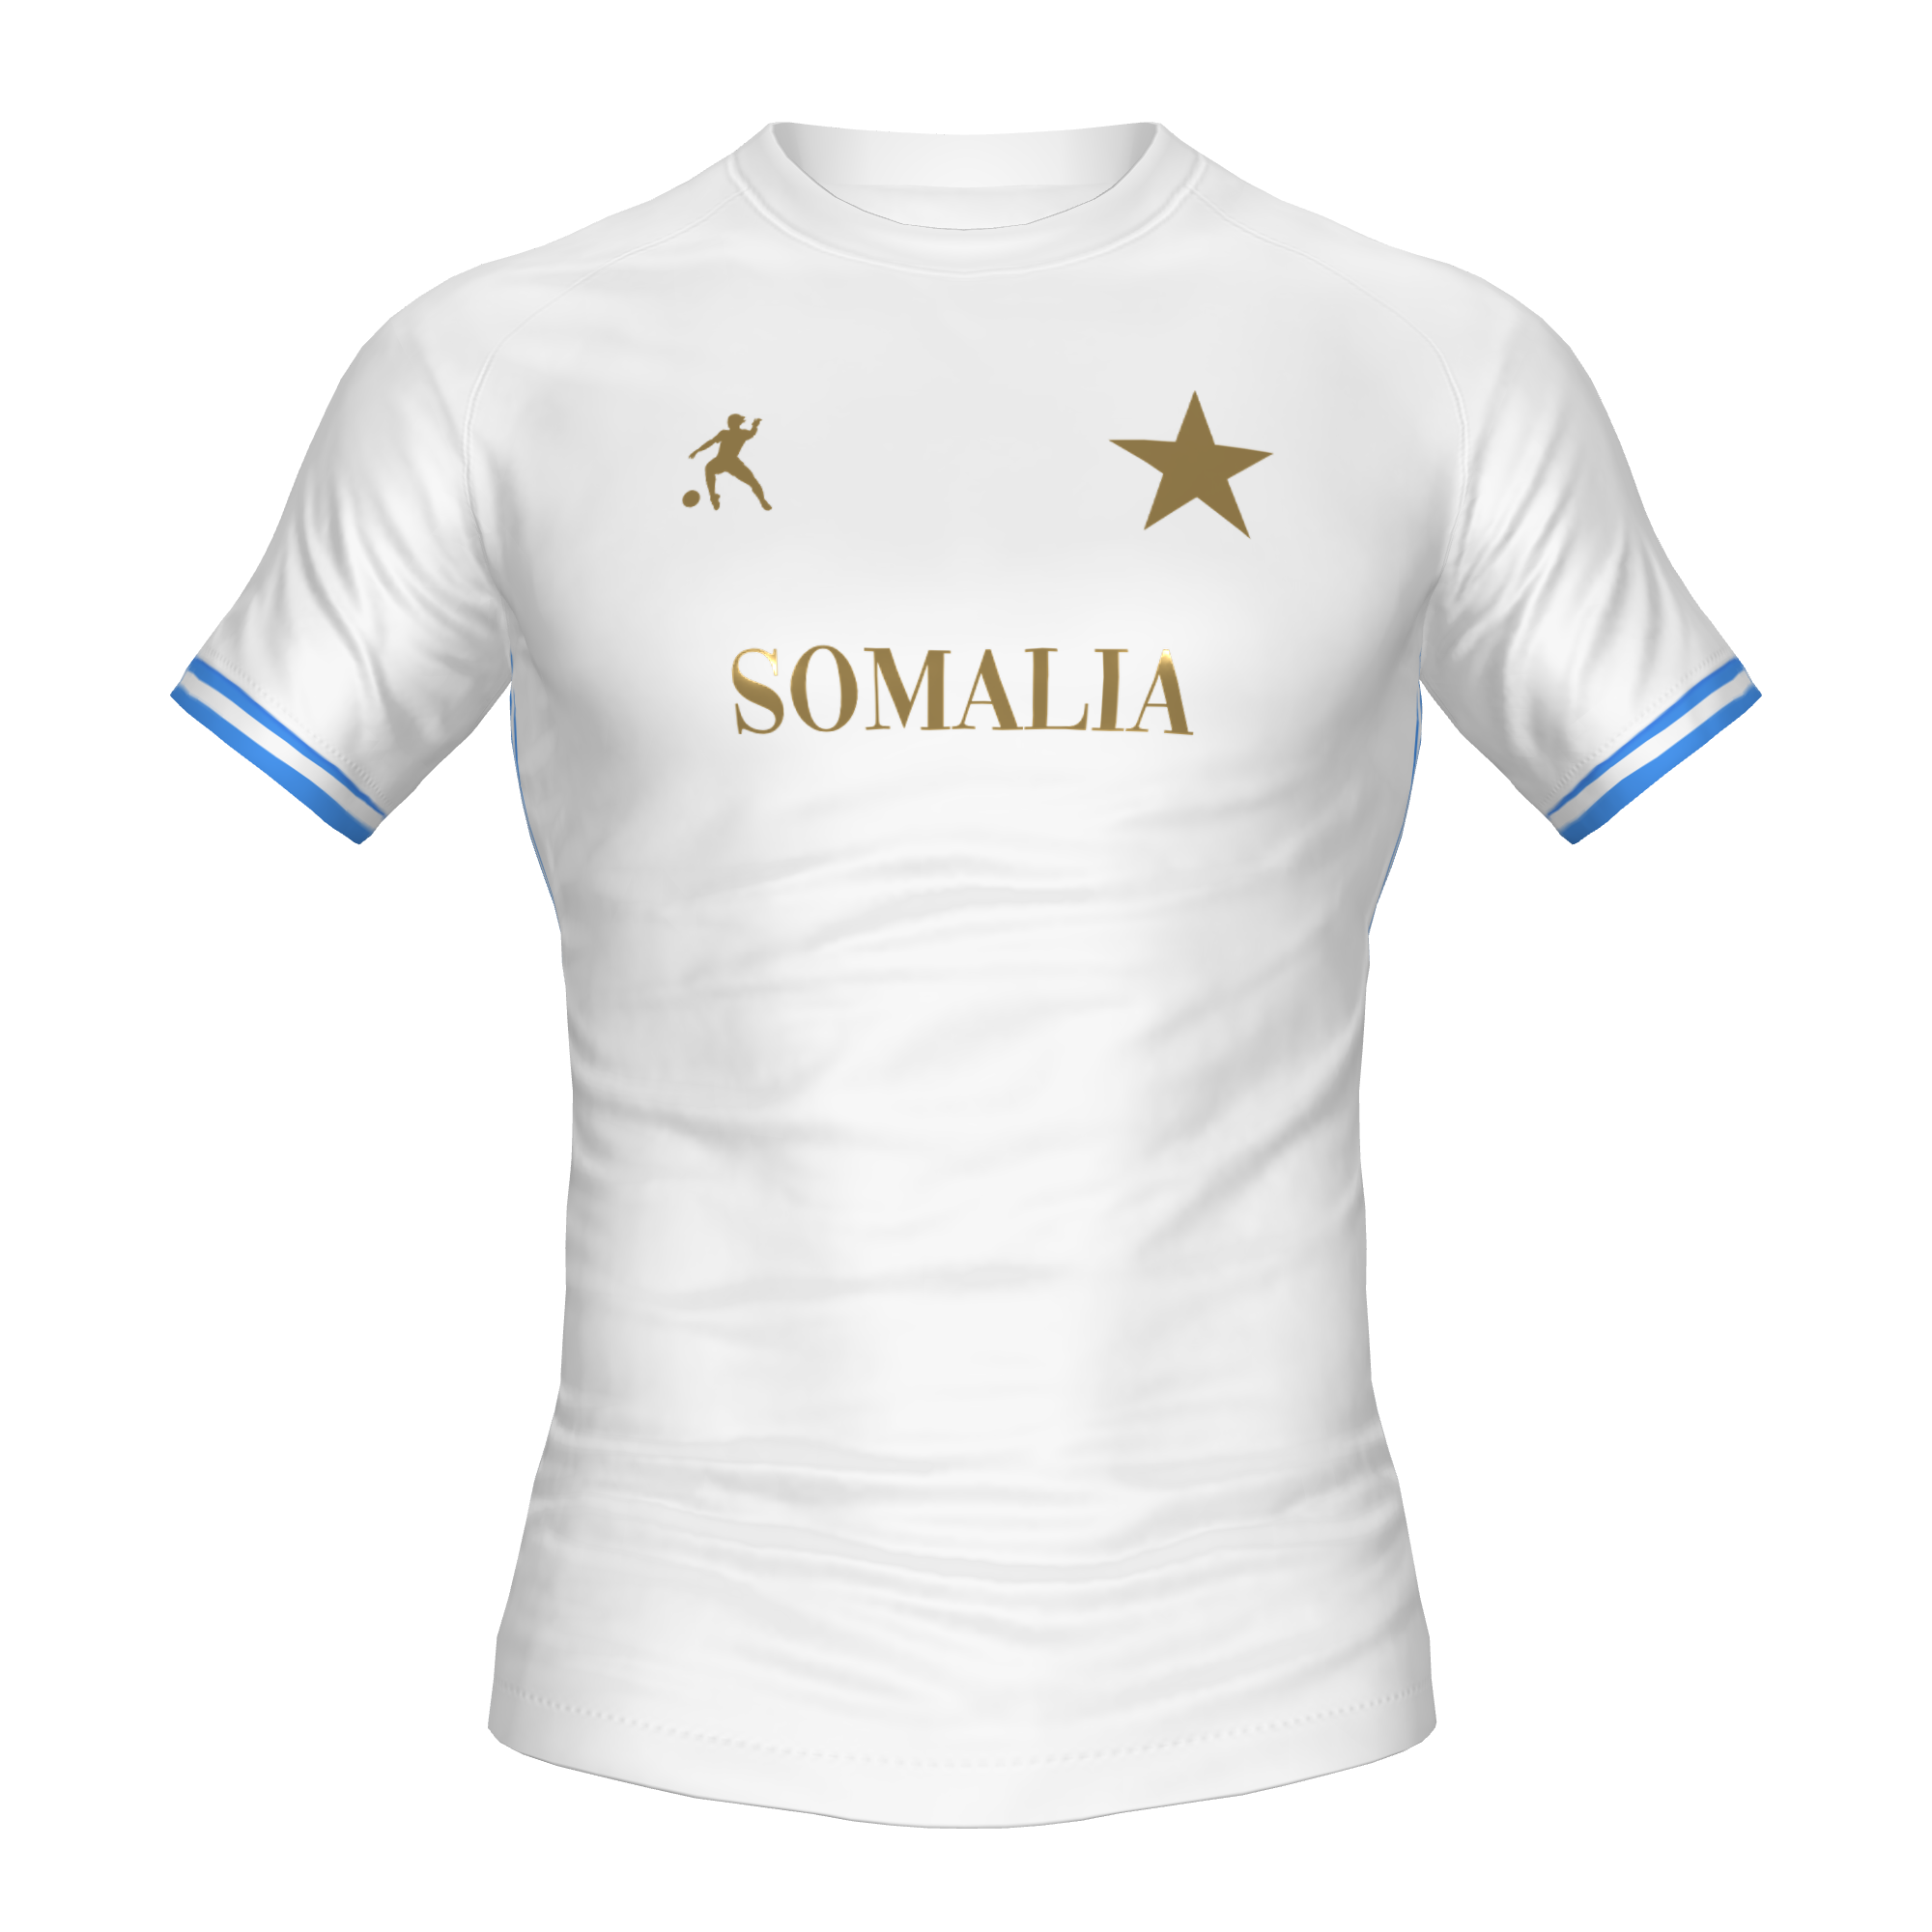 SOMALIA FOOTBALL SHIRT - LAIB